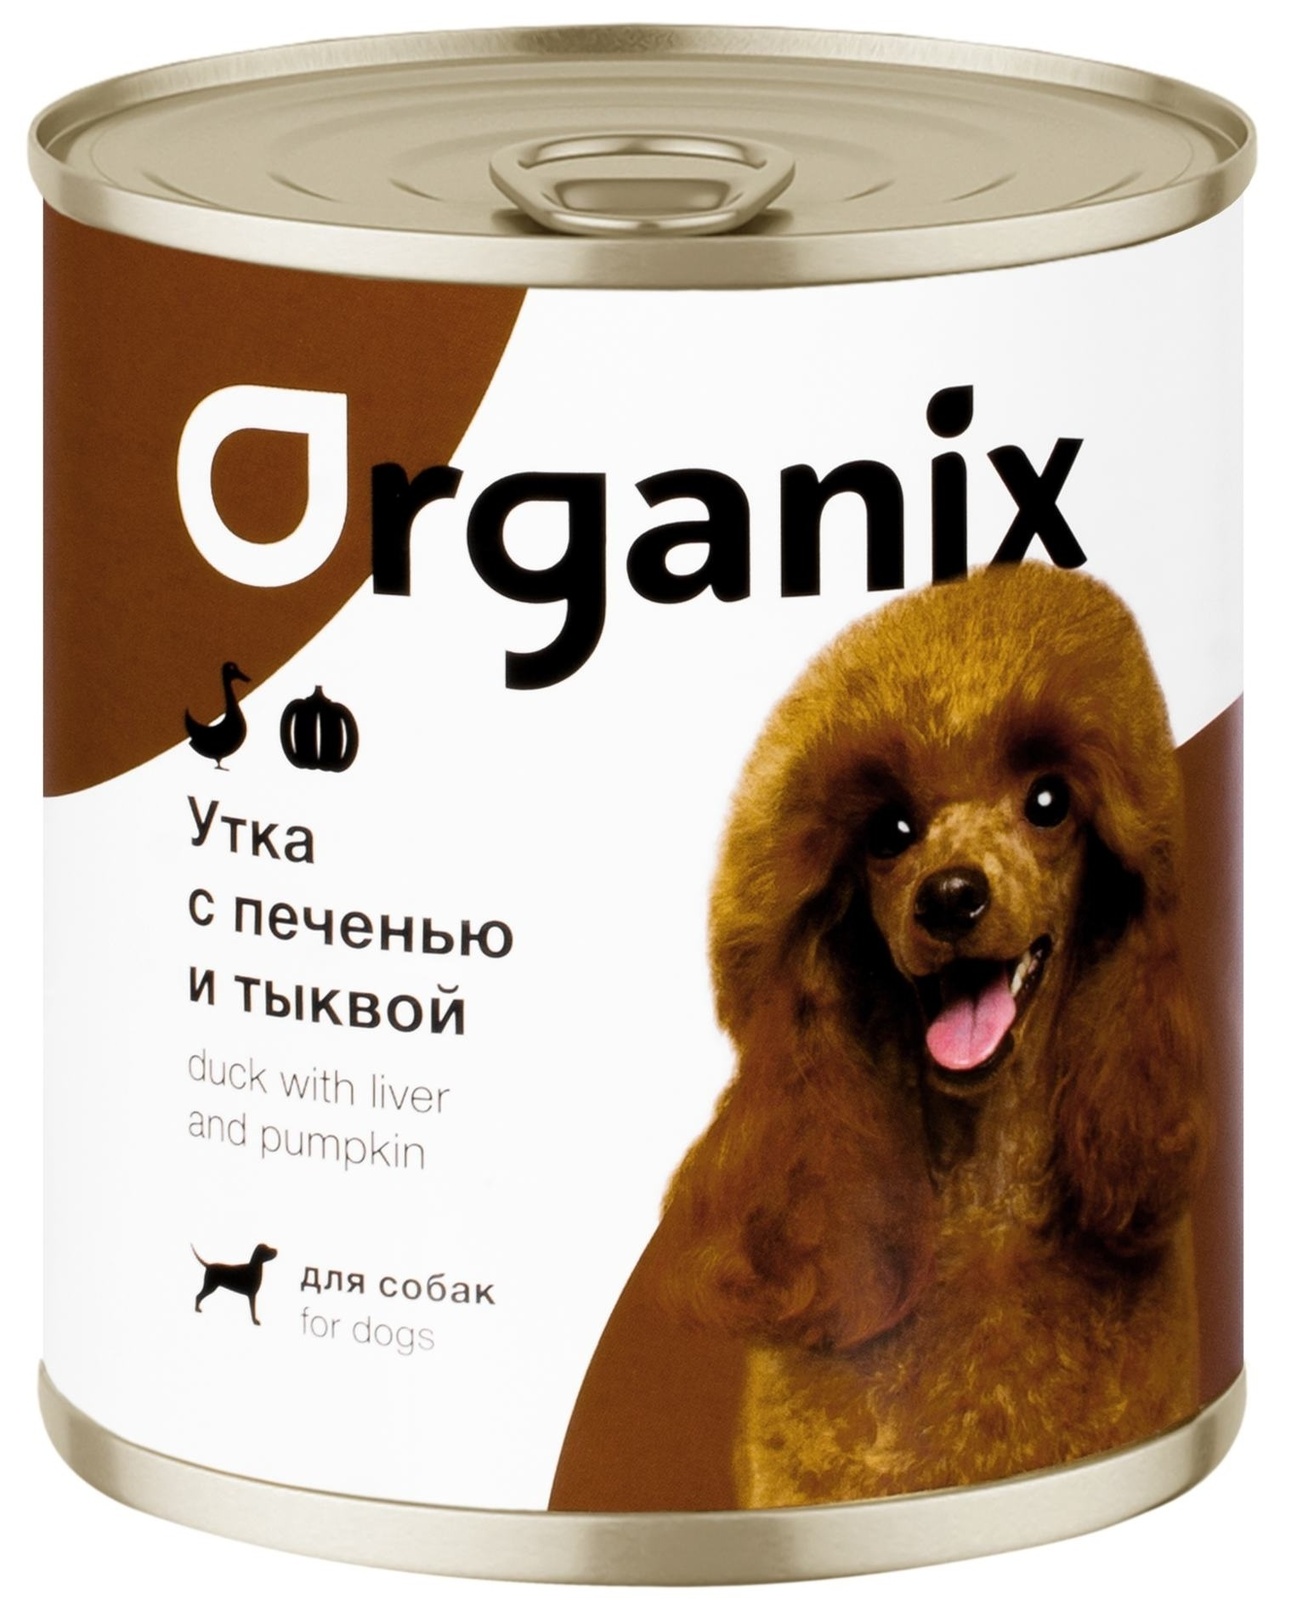 Organix консервы Organix консервы для собак Сочная утка с печенью и тыквой (750 г) organix консервы organix консервы для собак индейка с сердечками и шпинатом 750 г